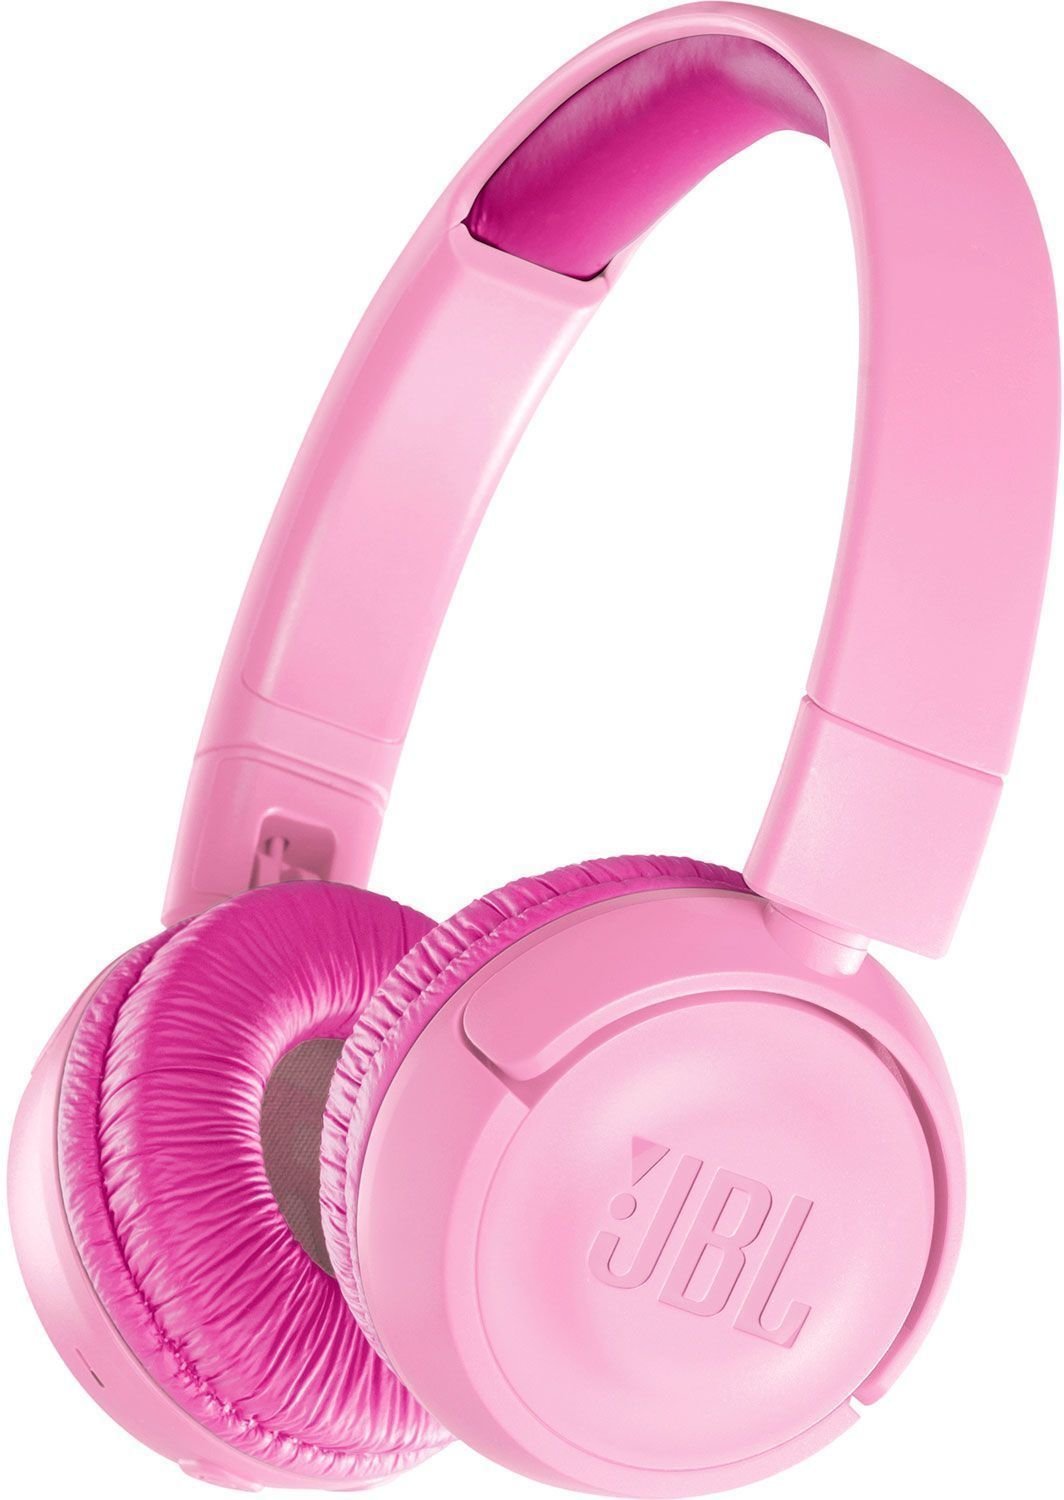 Drahtlose On-Ear-Kopfhörer JBL JR300BT Rosa